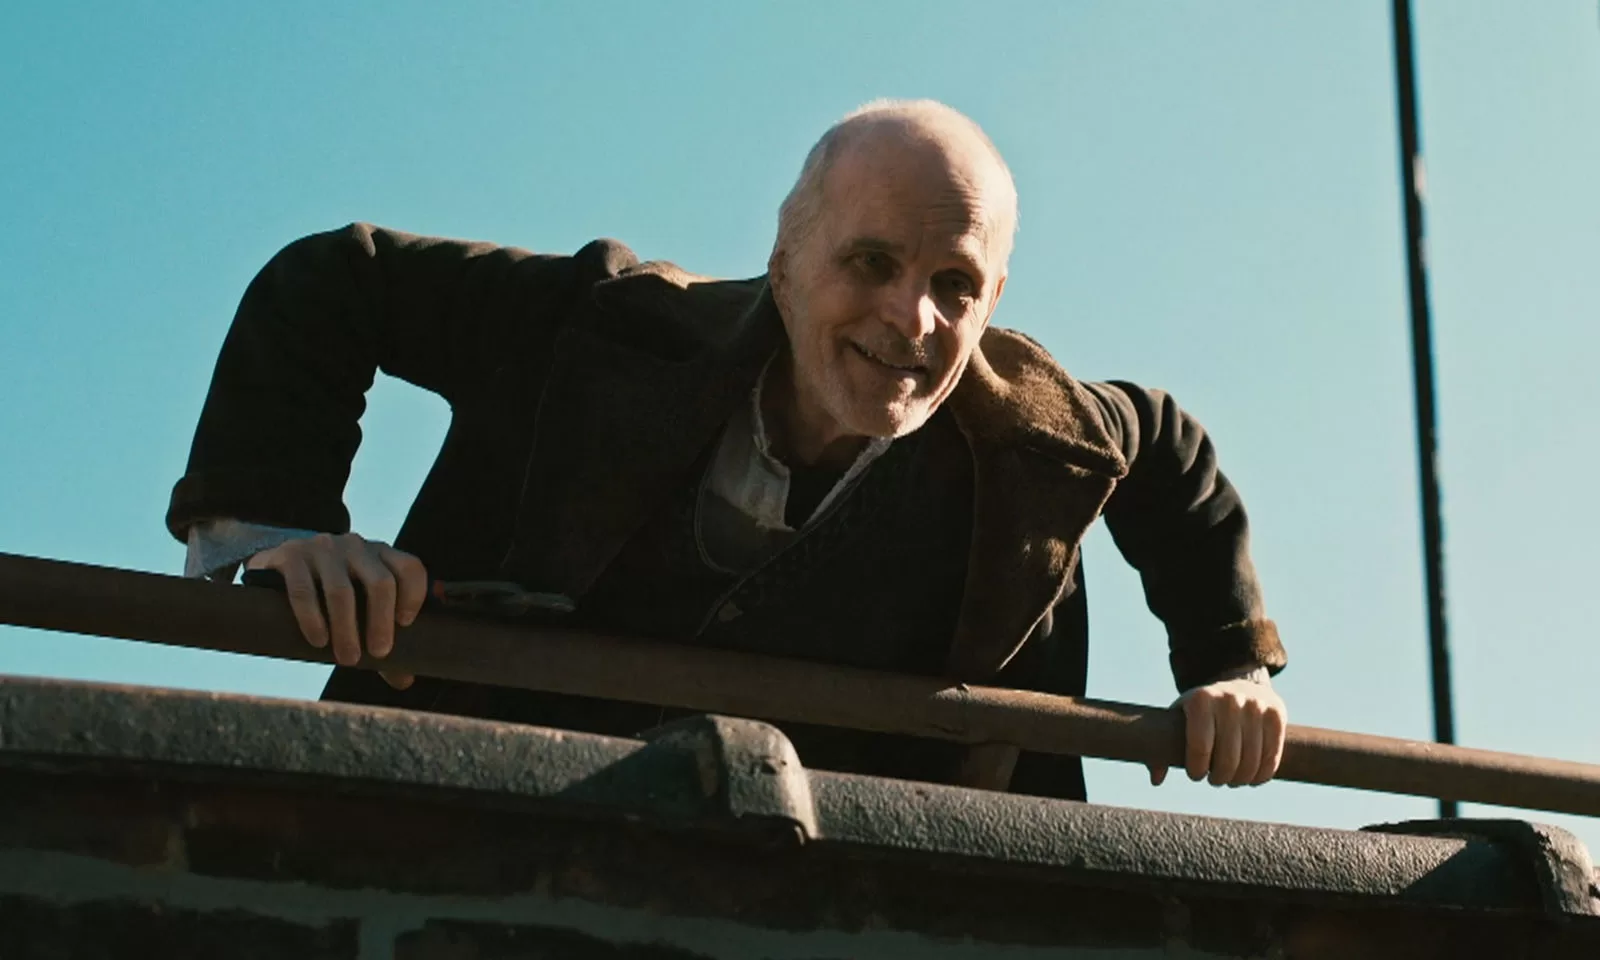 O Croata sorrindo após derrubar seu prisioneiro de cima do prédio em cena do episódio 1 da 1ª temporada de The Walking Dead: Dead City.